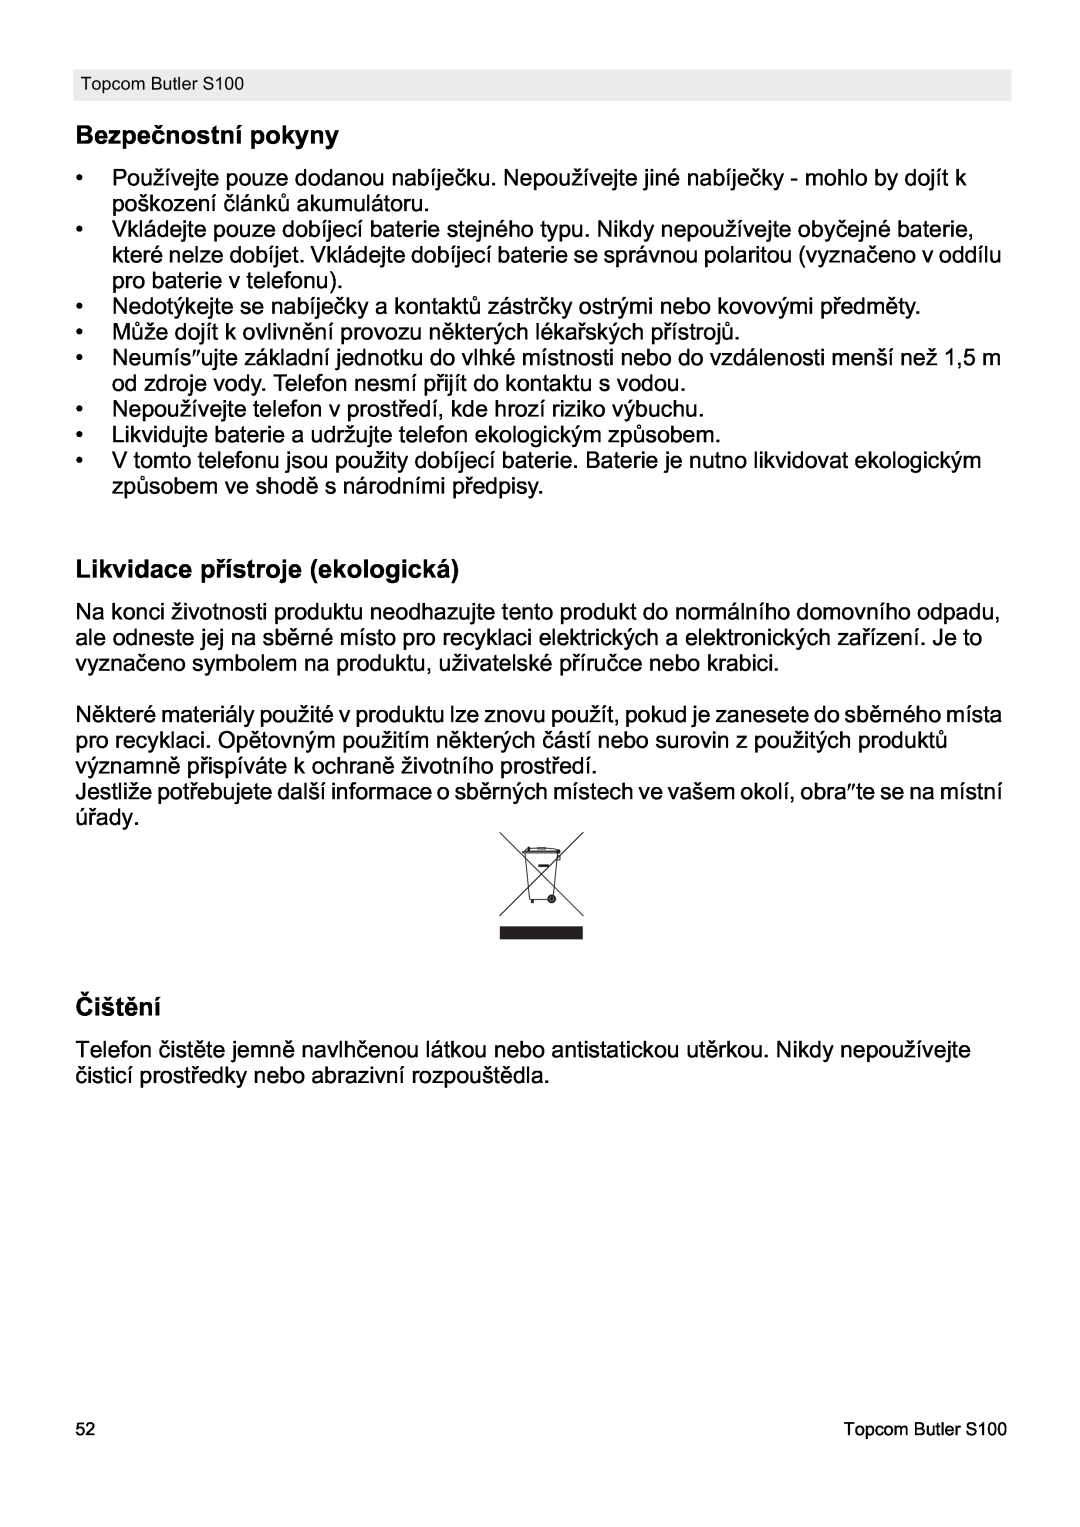 Topcom S100 manual do utilizador Bezpeþnostní pokyny, Likvidace pĜístroje ekologická, ýištČní 